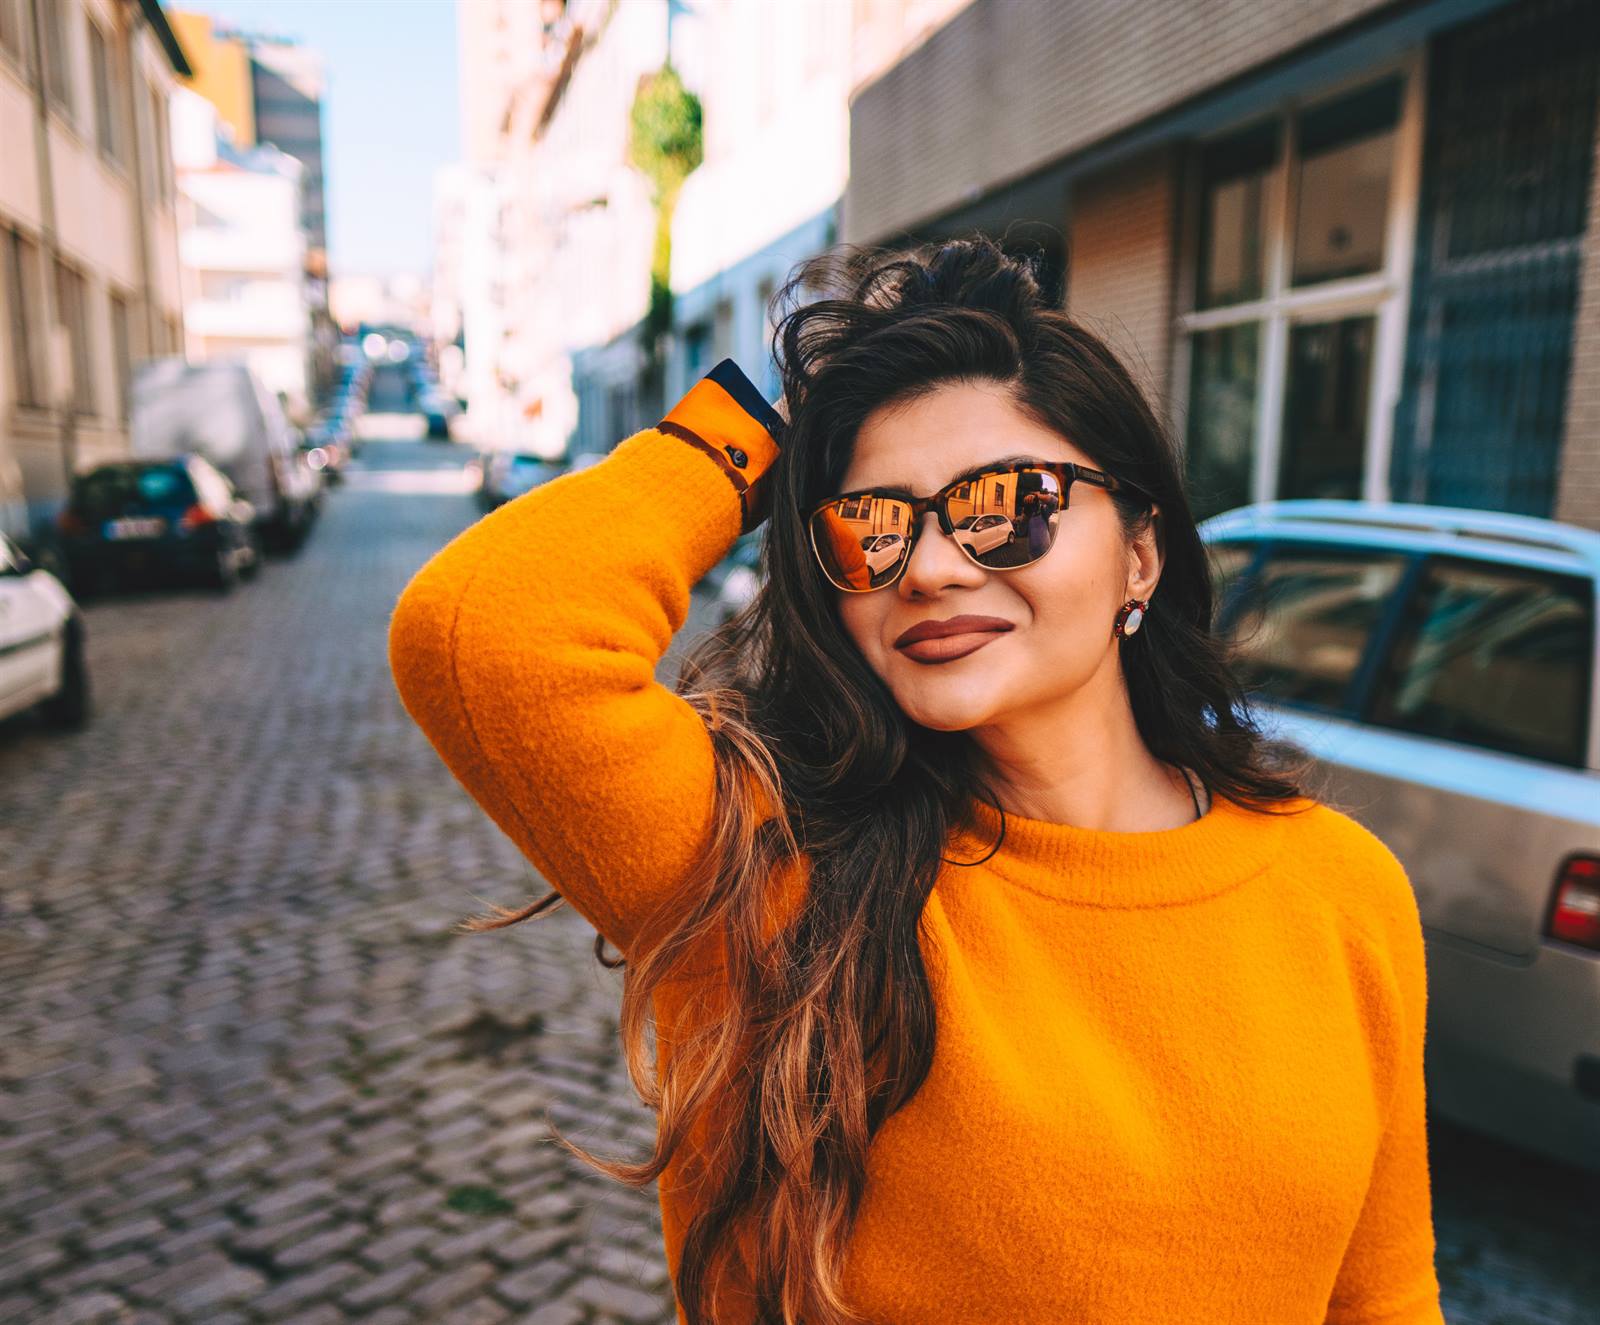 Zonnebril online letten bij kopen van zonnebrillen?